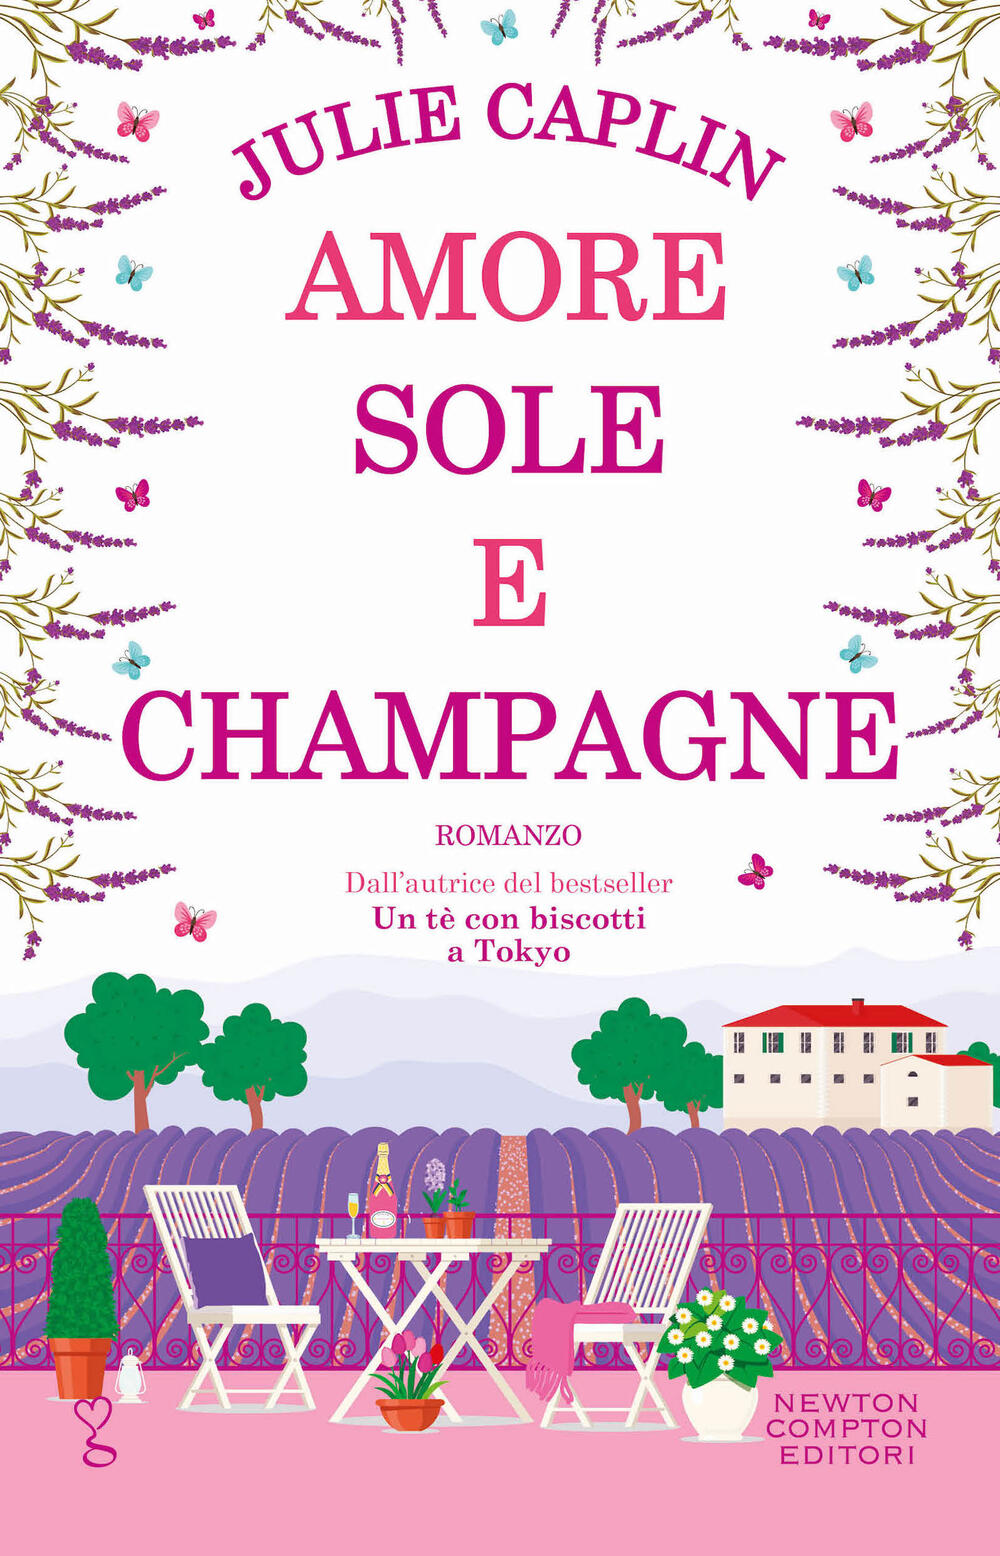 Amore sole e champagne di Julie Caplin - Brossura - Anagramma - Il Libraio